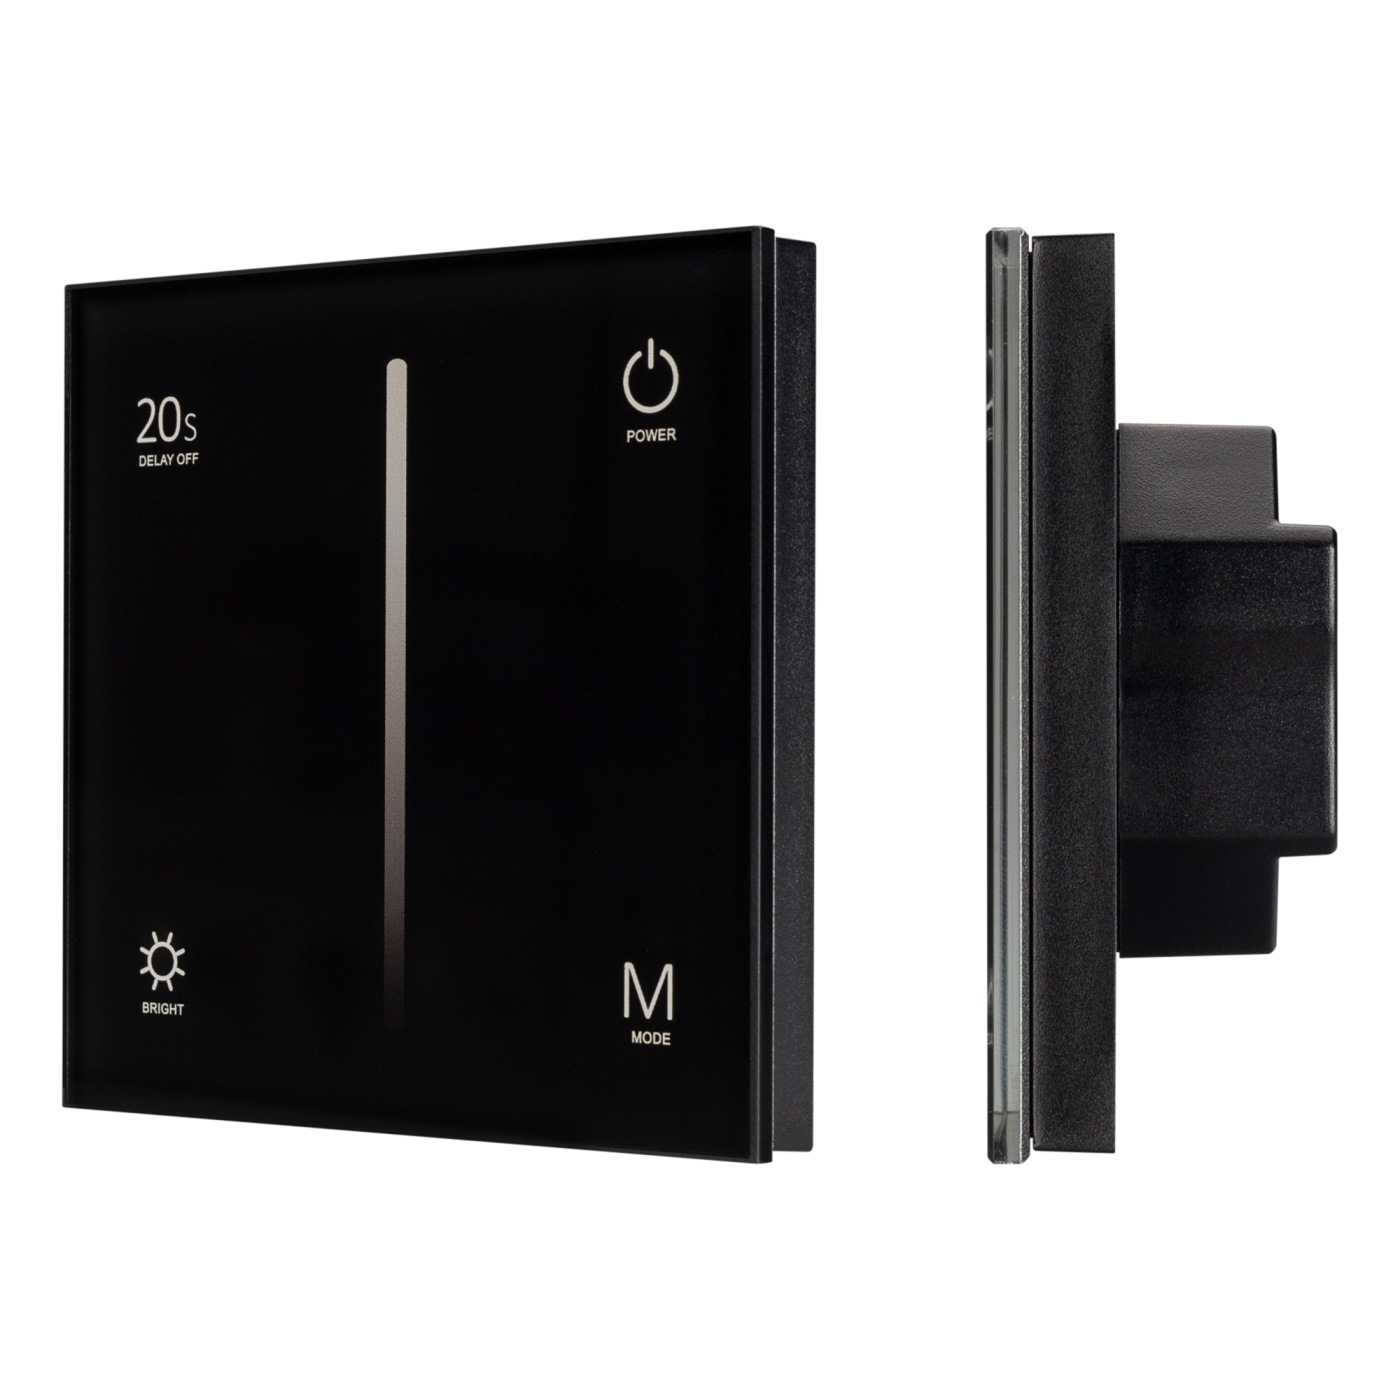 Панель SMART-P36-DIM-IN Black (230V, 1.2A, TRIAC, Sens, 2.4G) (Arlight, IP20 Пластик, 5 лет) жаровня гранит black induction pro 4 л стеклянная крышка антипригарное покрытие индукция чёрный